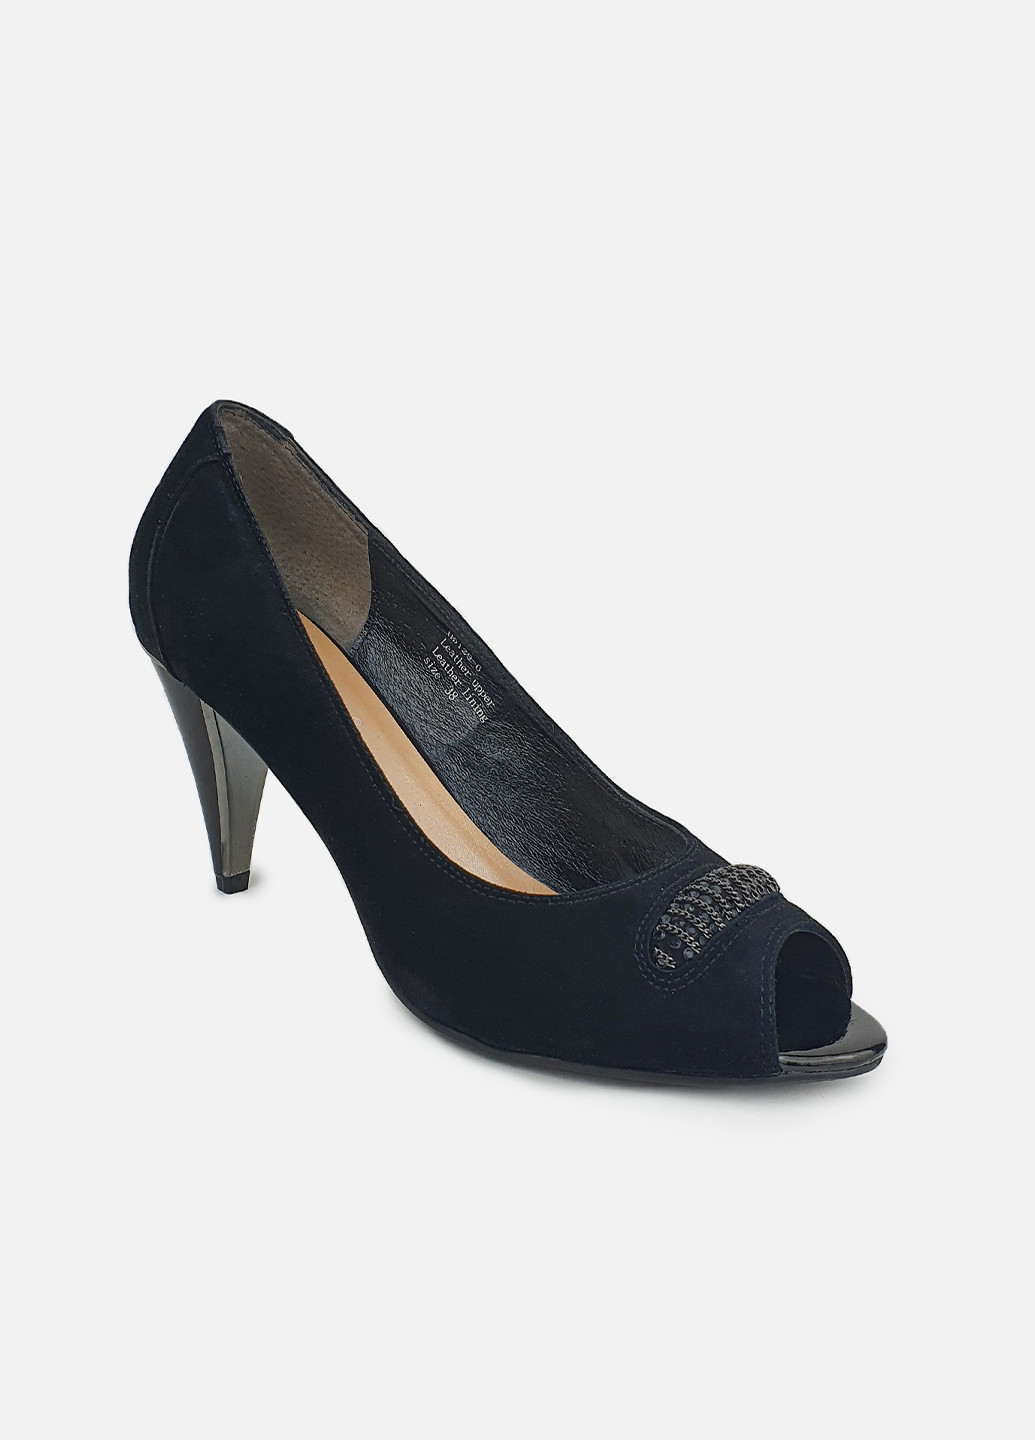 Женские туфли открытый носок черные летние замшевые Maria Moro